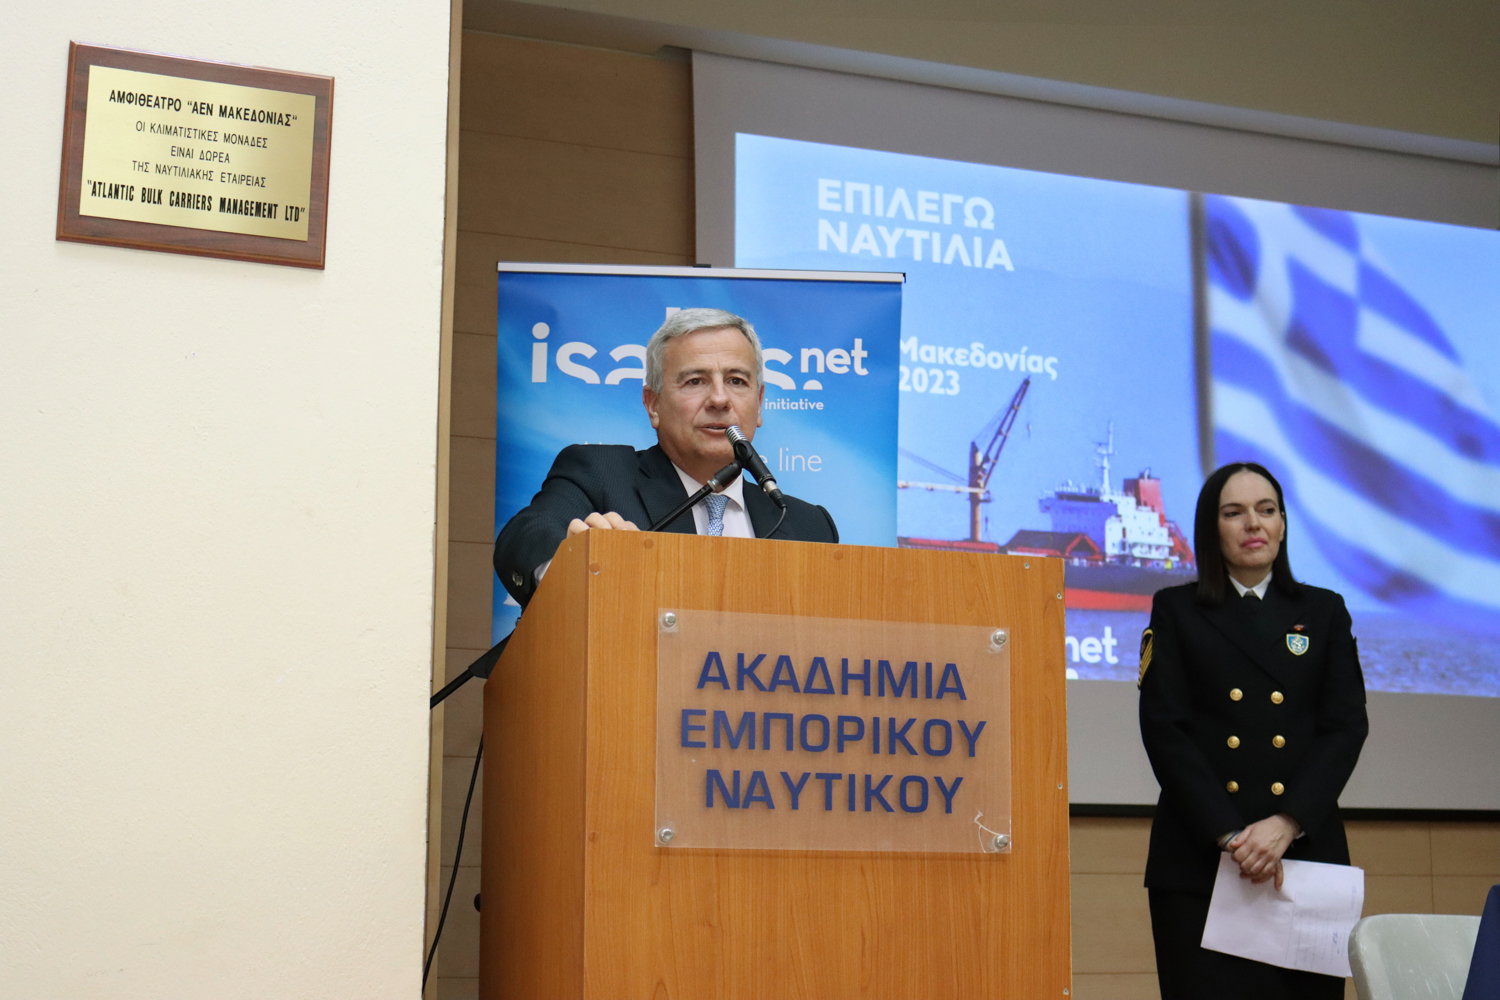 Ο κ. Λεωνίδας Δημητριάδης-Ευγενίδης, Πρόεδρος του Ιδρύματος Ευγενίδου και Ναυτιλιακός Πρεσβευτής Καλής Θελήσεως του IMO στην Ελλάδα